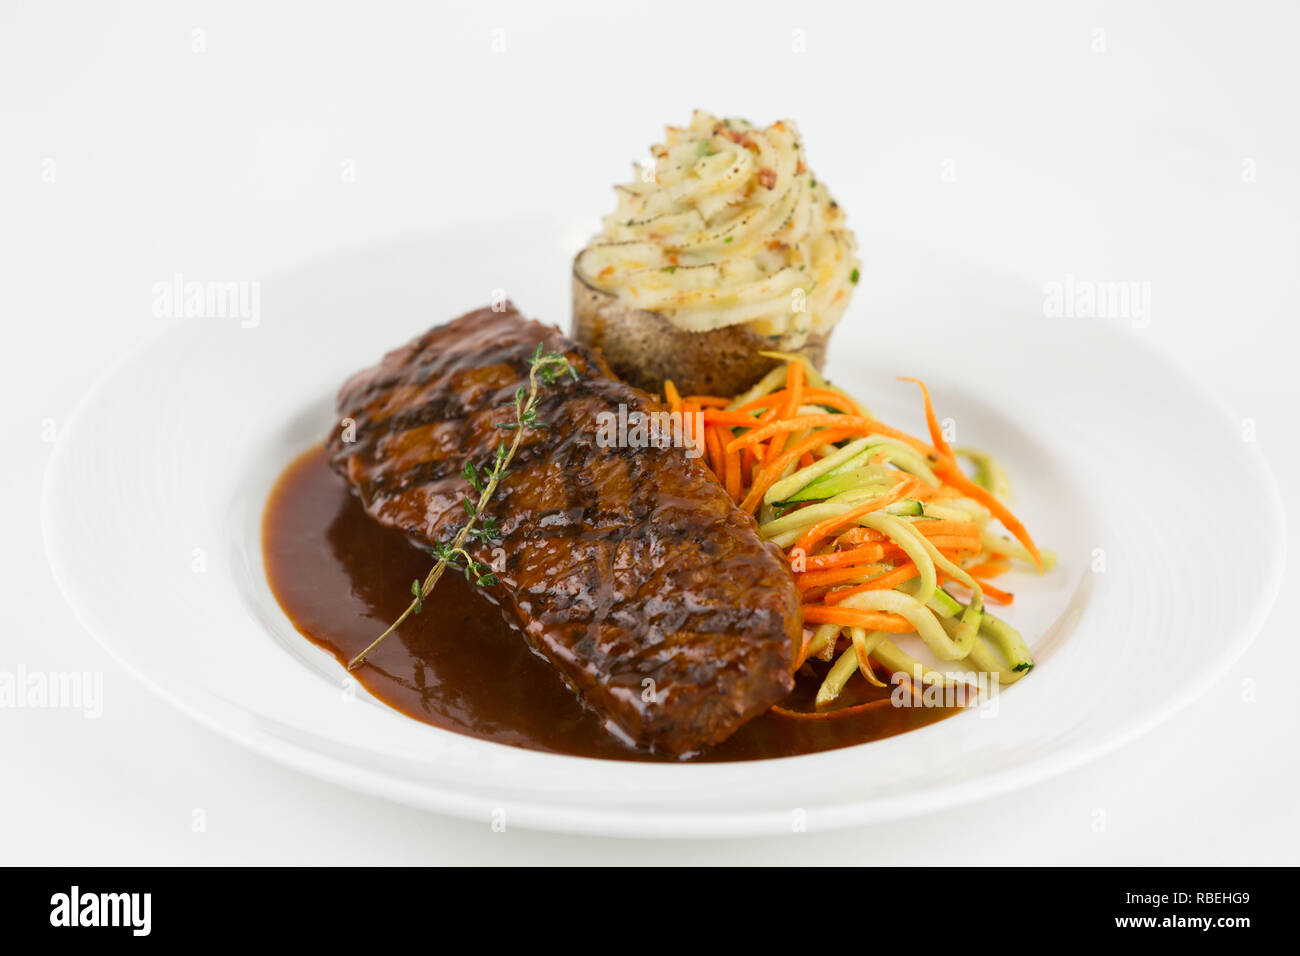 Plated steak dinner Stock Photo